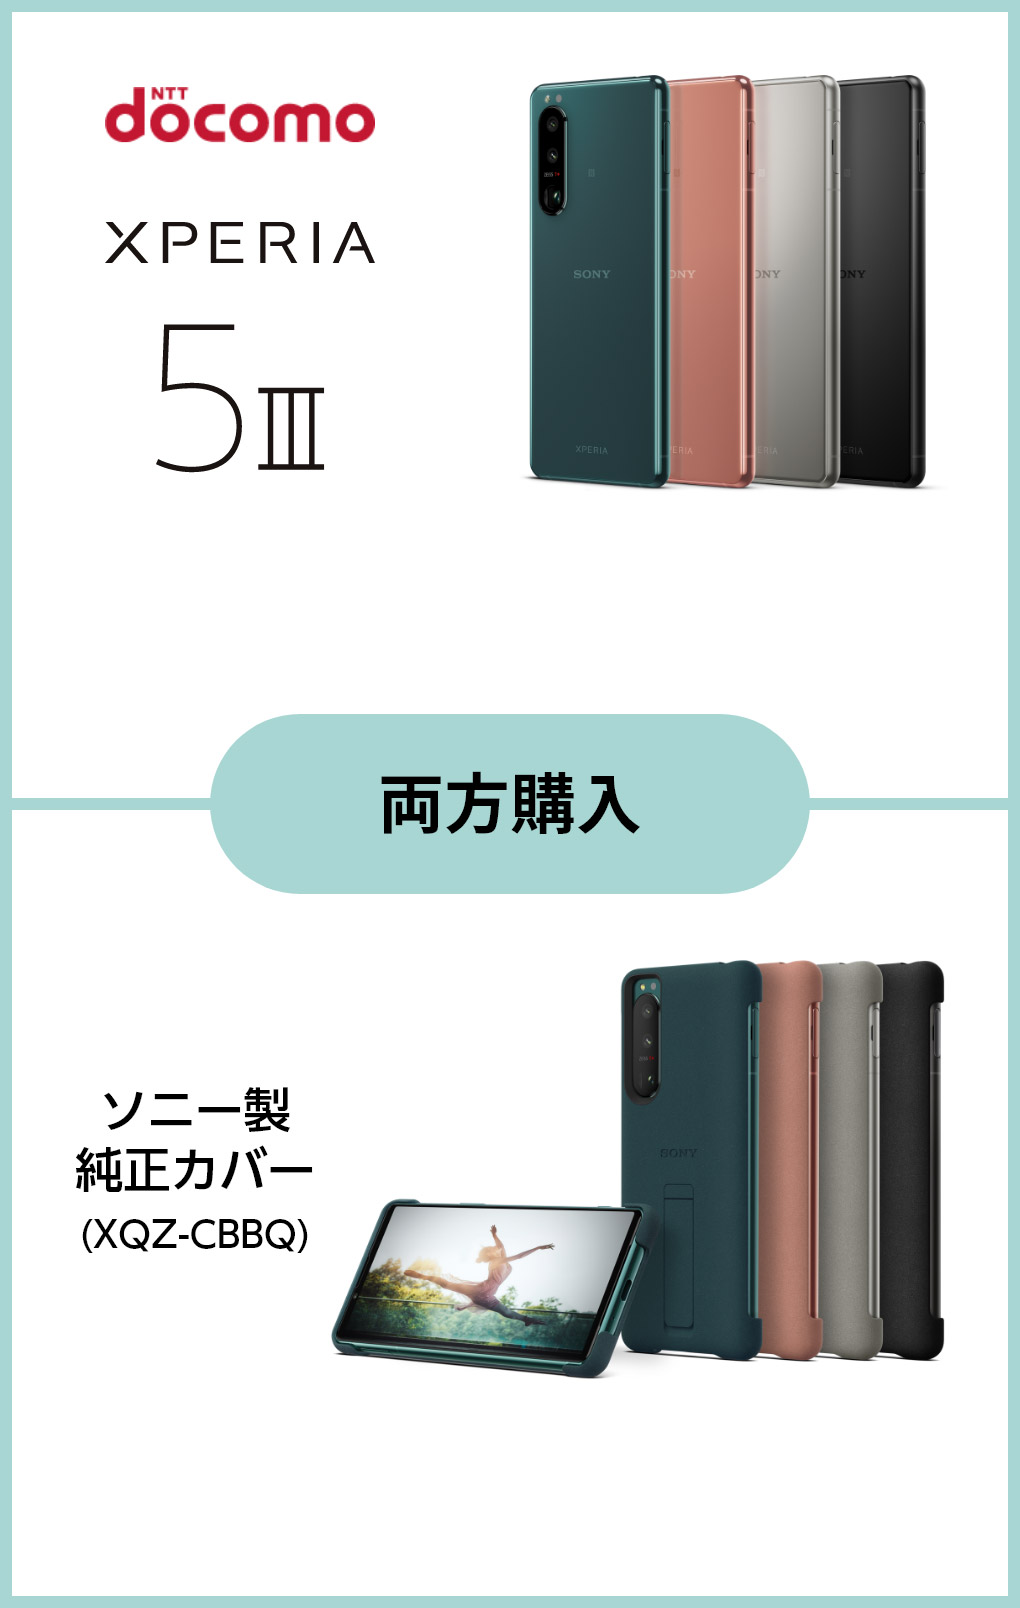 Xperia 5 III ソニー製純正カバー(XQZ-CBBQ) 両方購入